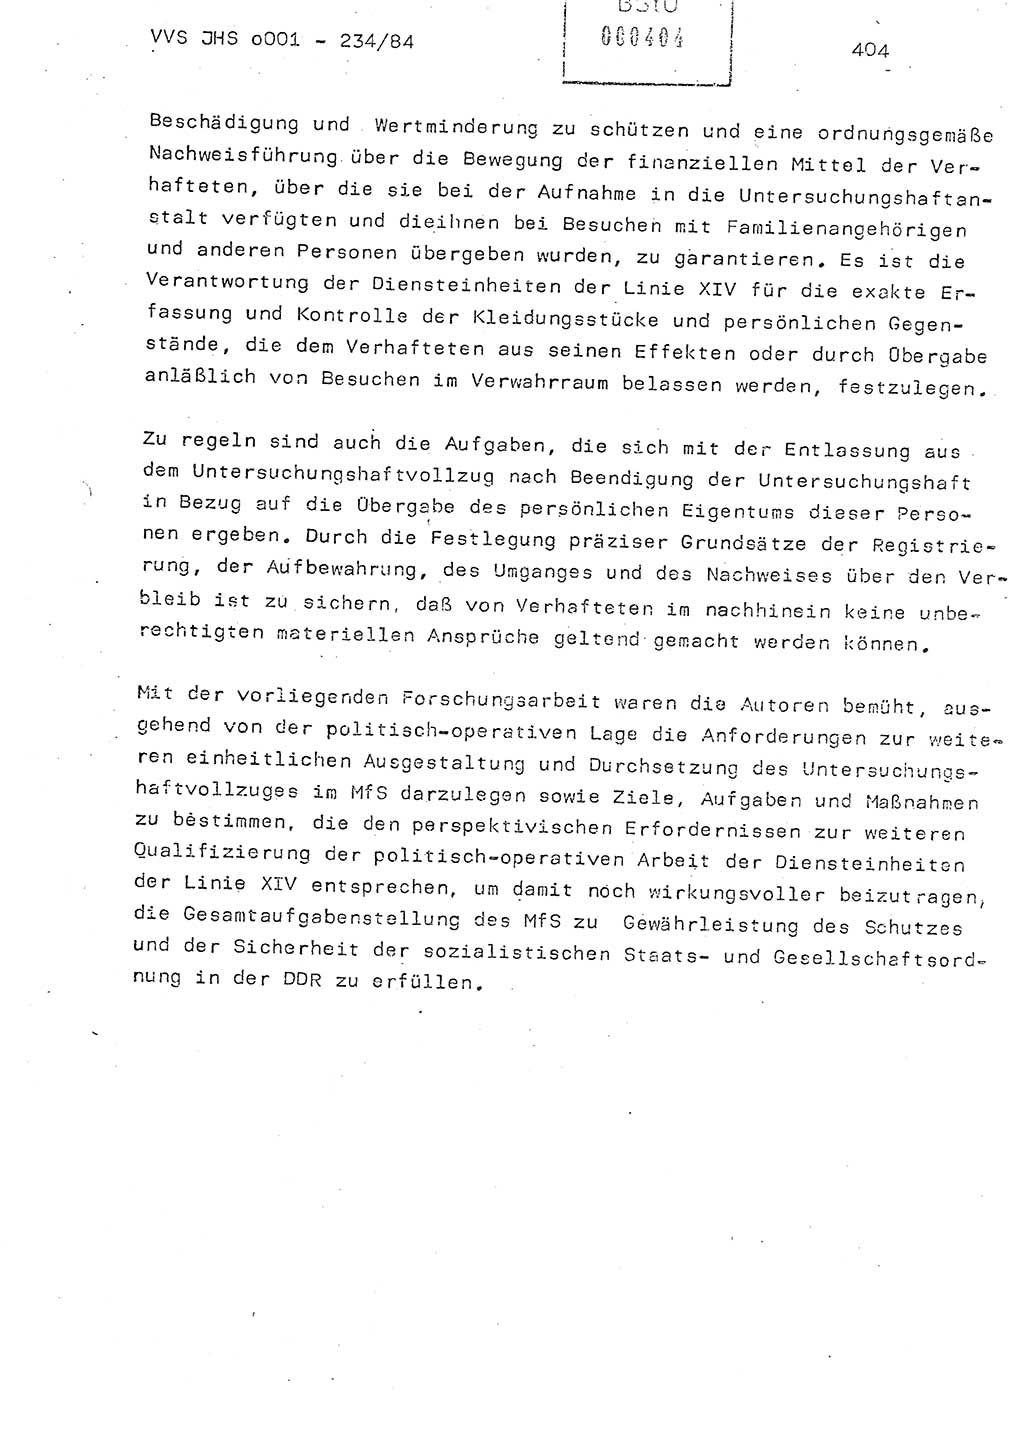 Dissertation Oberst Siegfried Rataizick (Abt. ⅩⅣ), Oberstleutnant Volkmar Heinz (Abt. ⅩⅣ), Oberstleutnant Werner Stein (HA Ⅸ), Hauptmann Heinz Conrad (JHS), Ministerium für Staatssicherheit (MfS) [Deutsche Demokratische Republik (DDR)], Juristische Hochschule (JHS), Vertrauliche Verschlußsache (VVS) o001-234/84, Potsdam 1984, Seite 404 (Diss. MfS DDR JHS VVS o001-234/84 1984, S. 404)